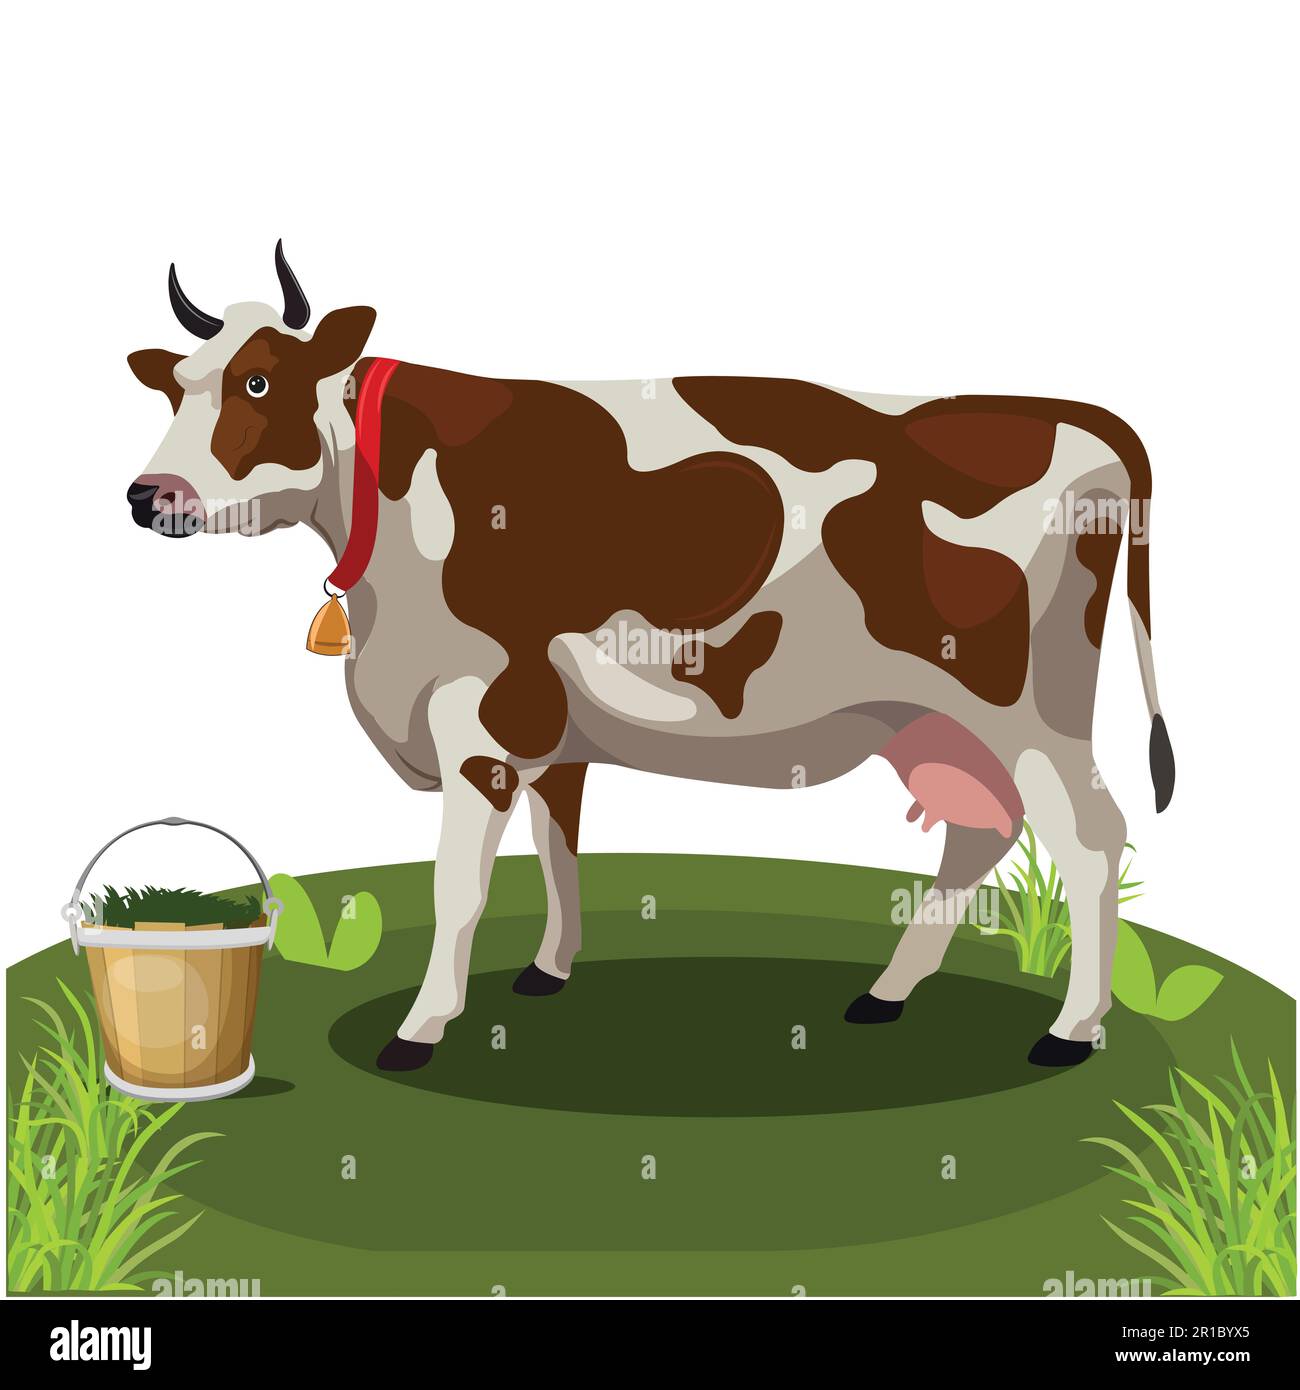 Jolie vache à dessin animé debout sur l'herbe. Image vectorielle de la vache sur fond blanc. Isoler l'image de l'arrière-plan et l'utiliser pour les enfants karn alphabet Illustration de Vecteur